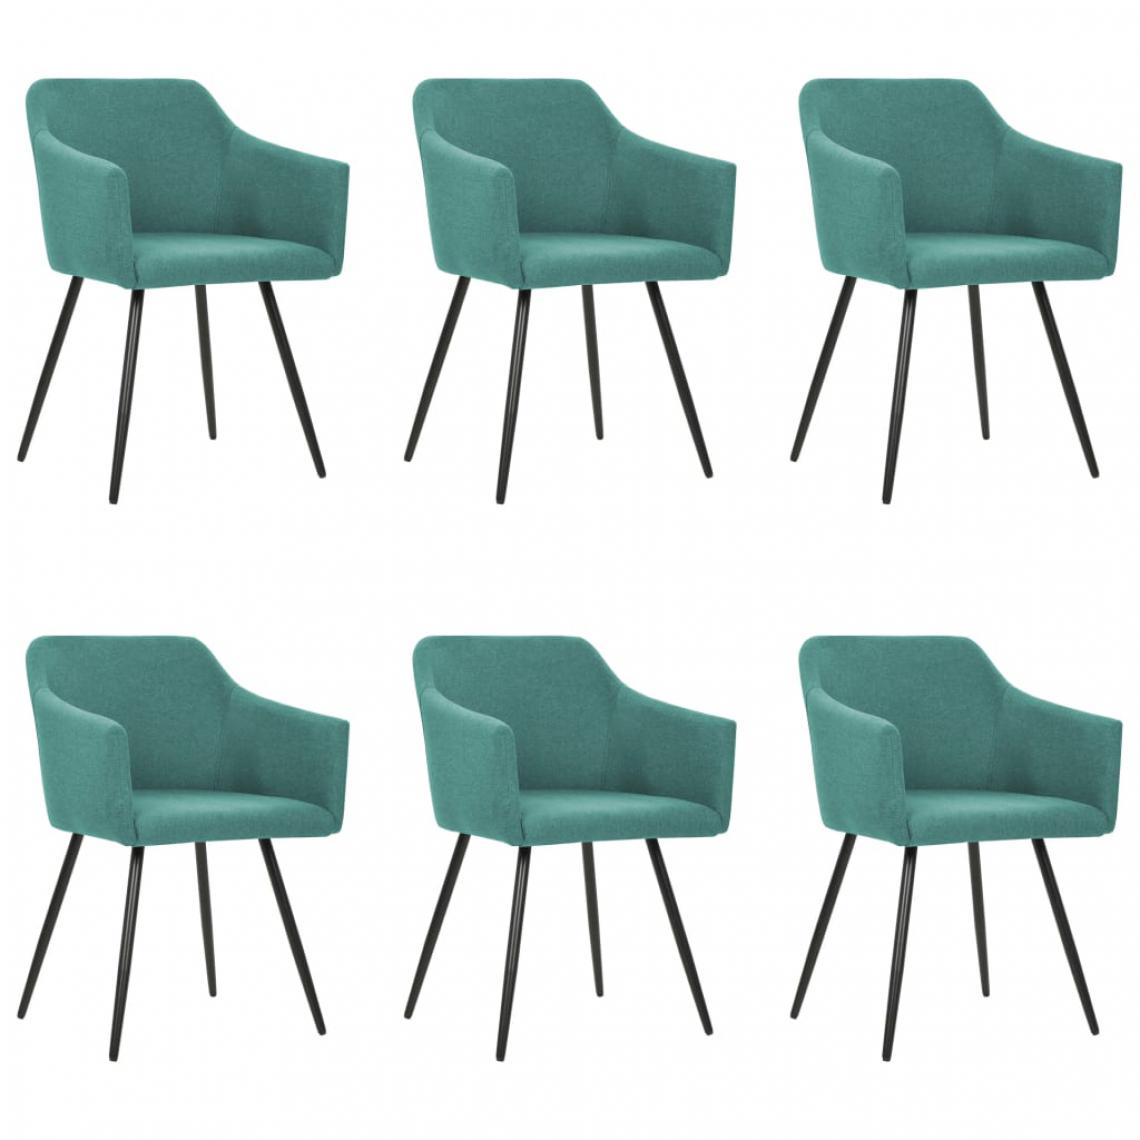 Icaverne - Joli Fauteuils et chaises categorie Banjul Chaises de salle à manger 6 pcs Vert Tissu - Chaises